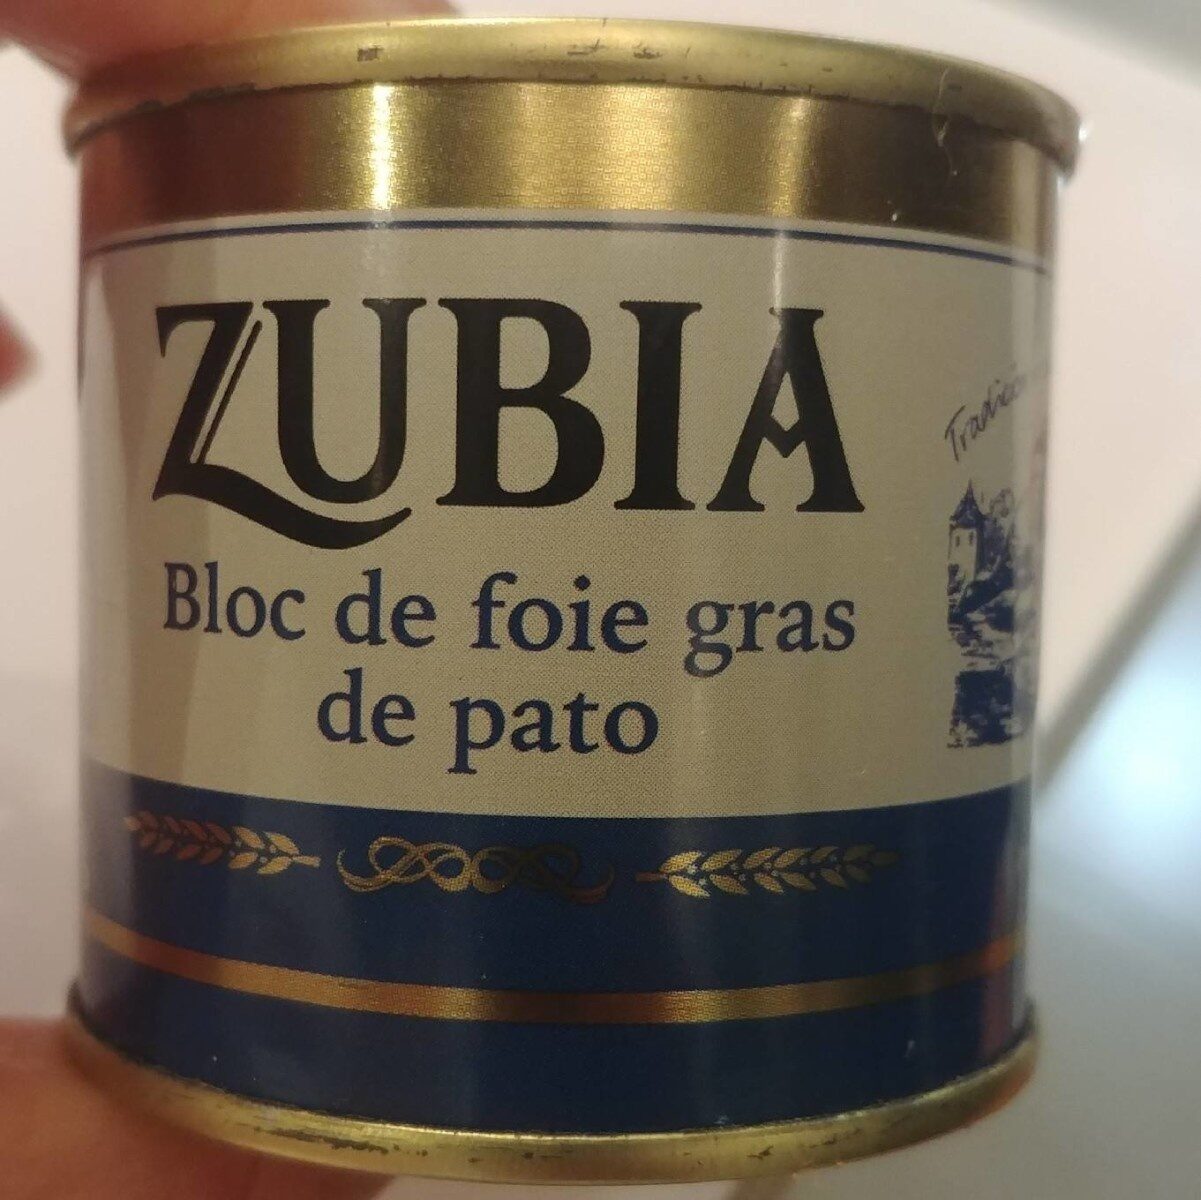 Bloc de foie gras de pato - Producto